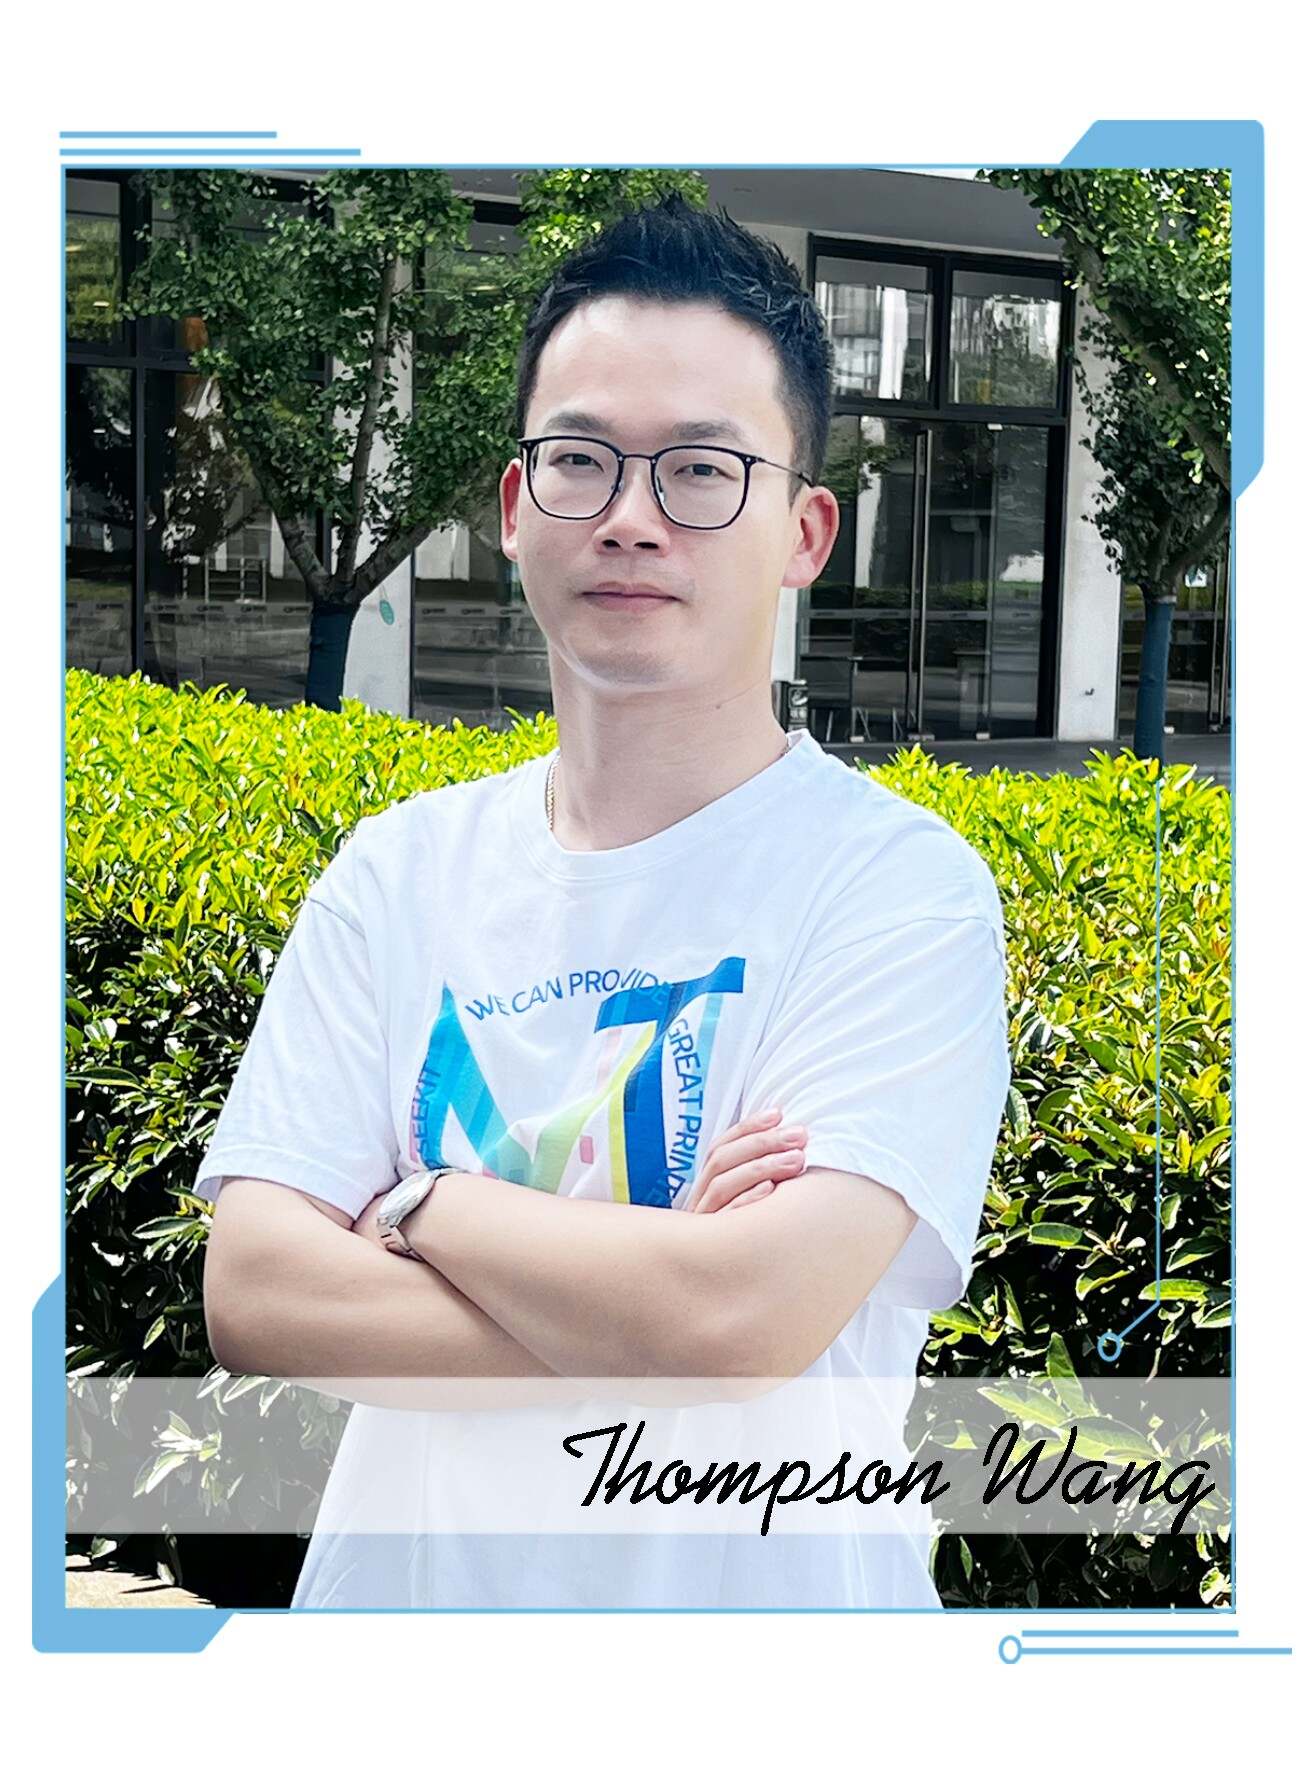 Thompson Wang